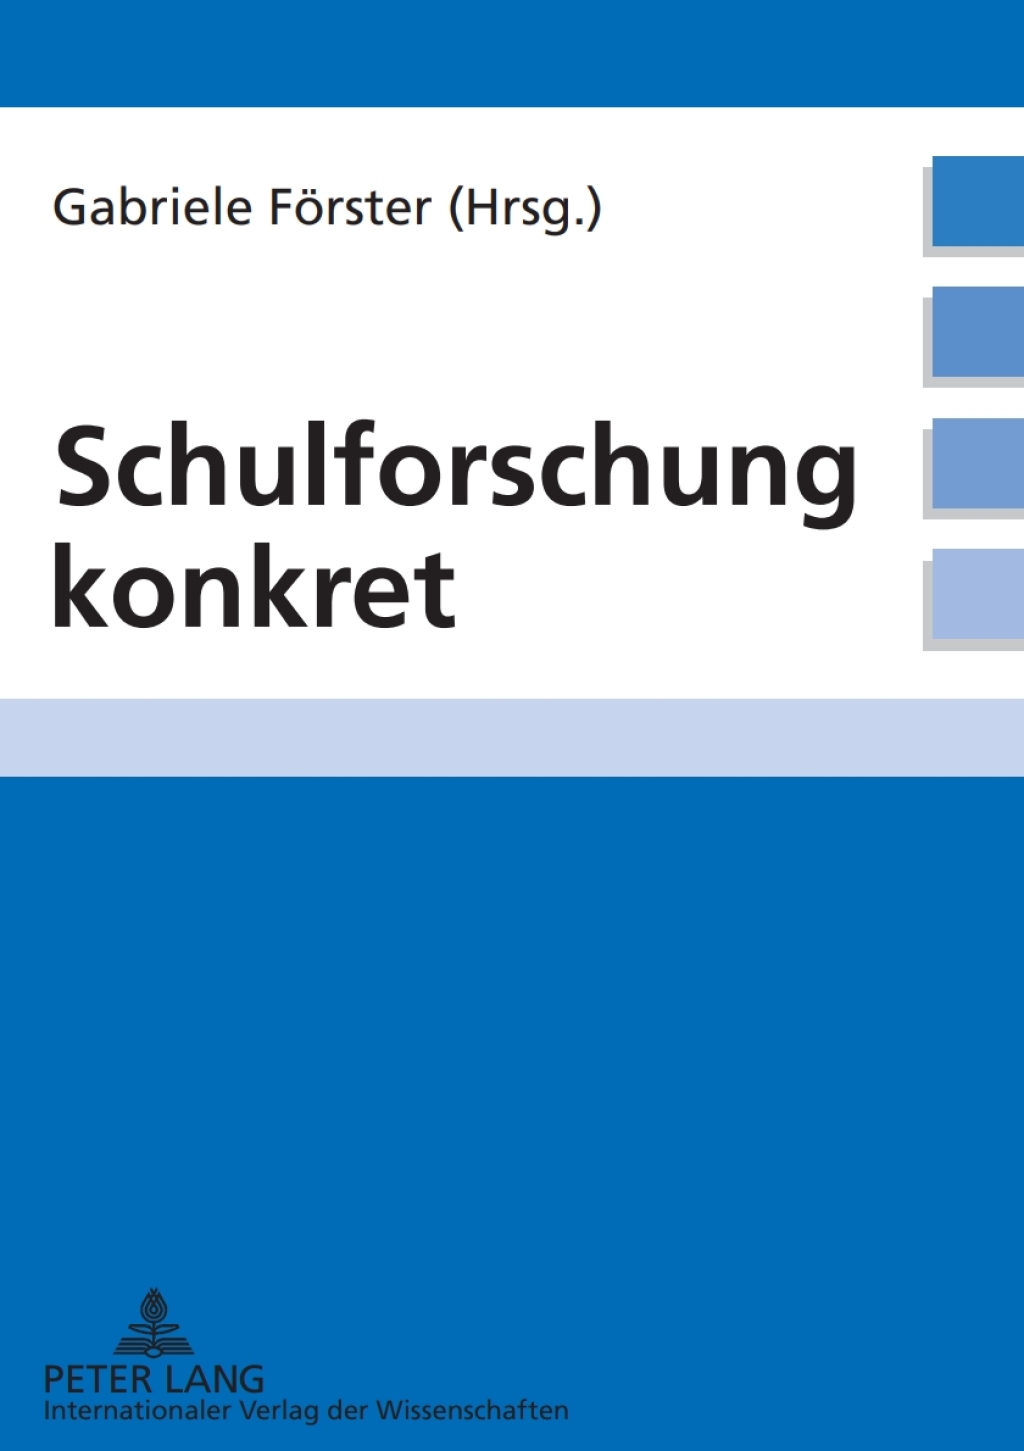 Schulforschung konkret (eBook) - Gabriele FÃ¶rster